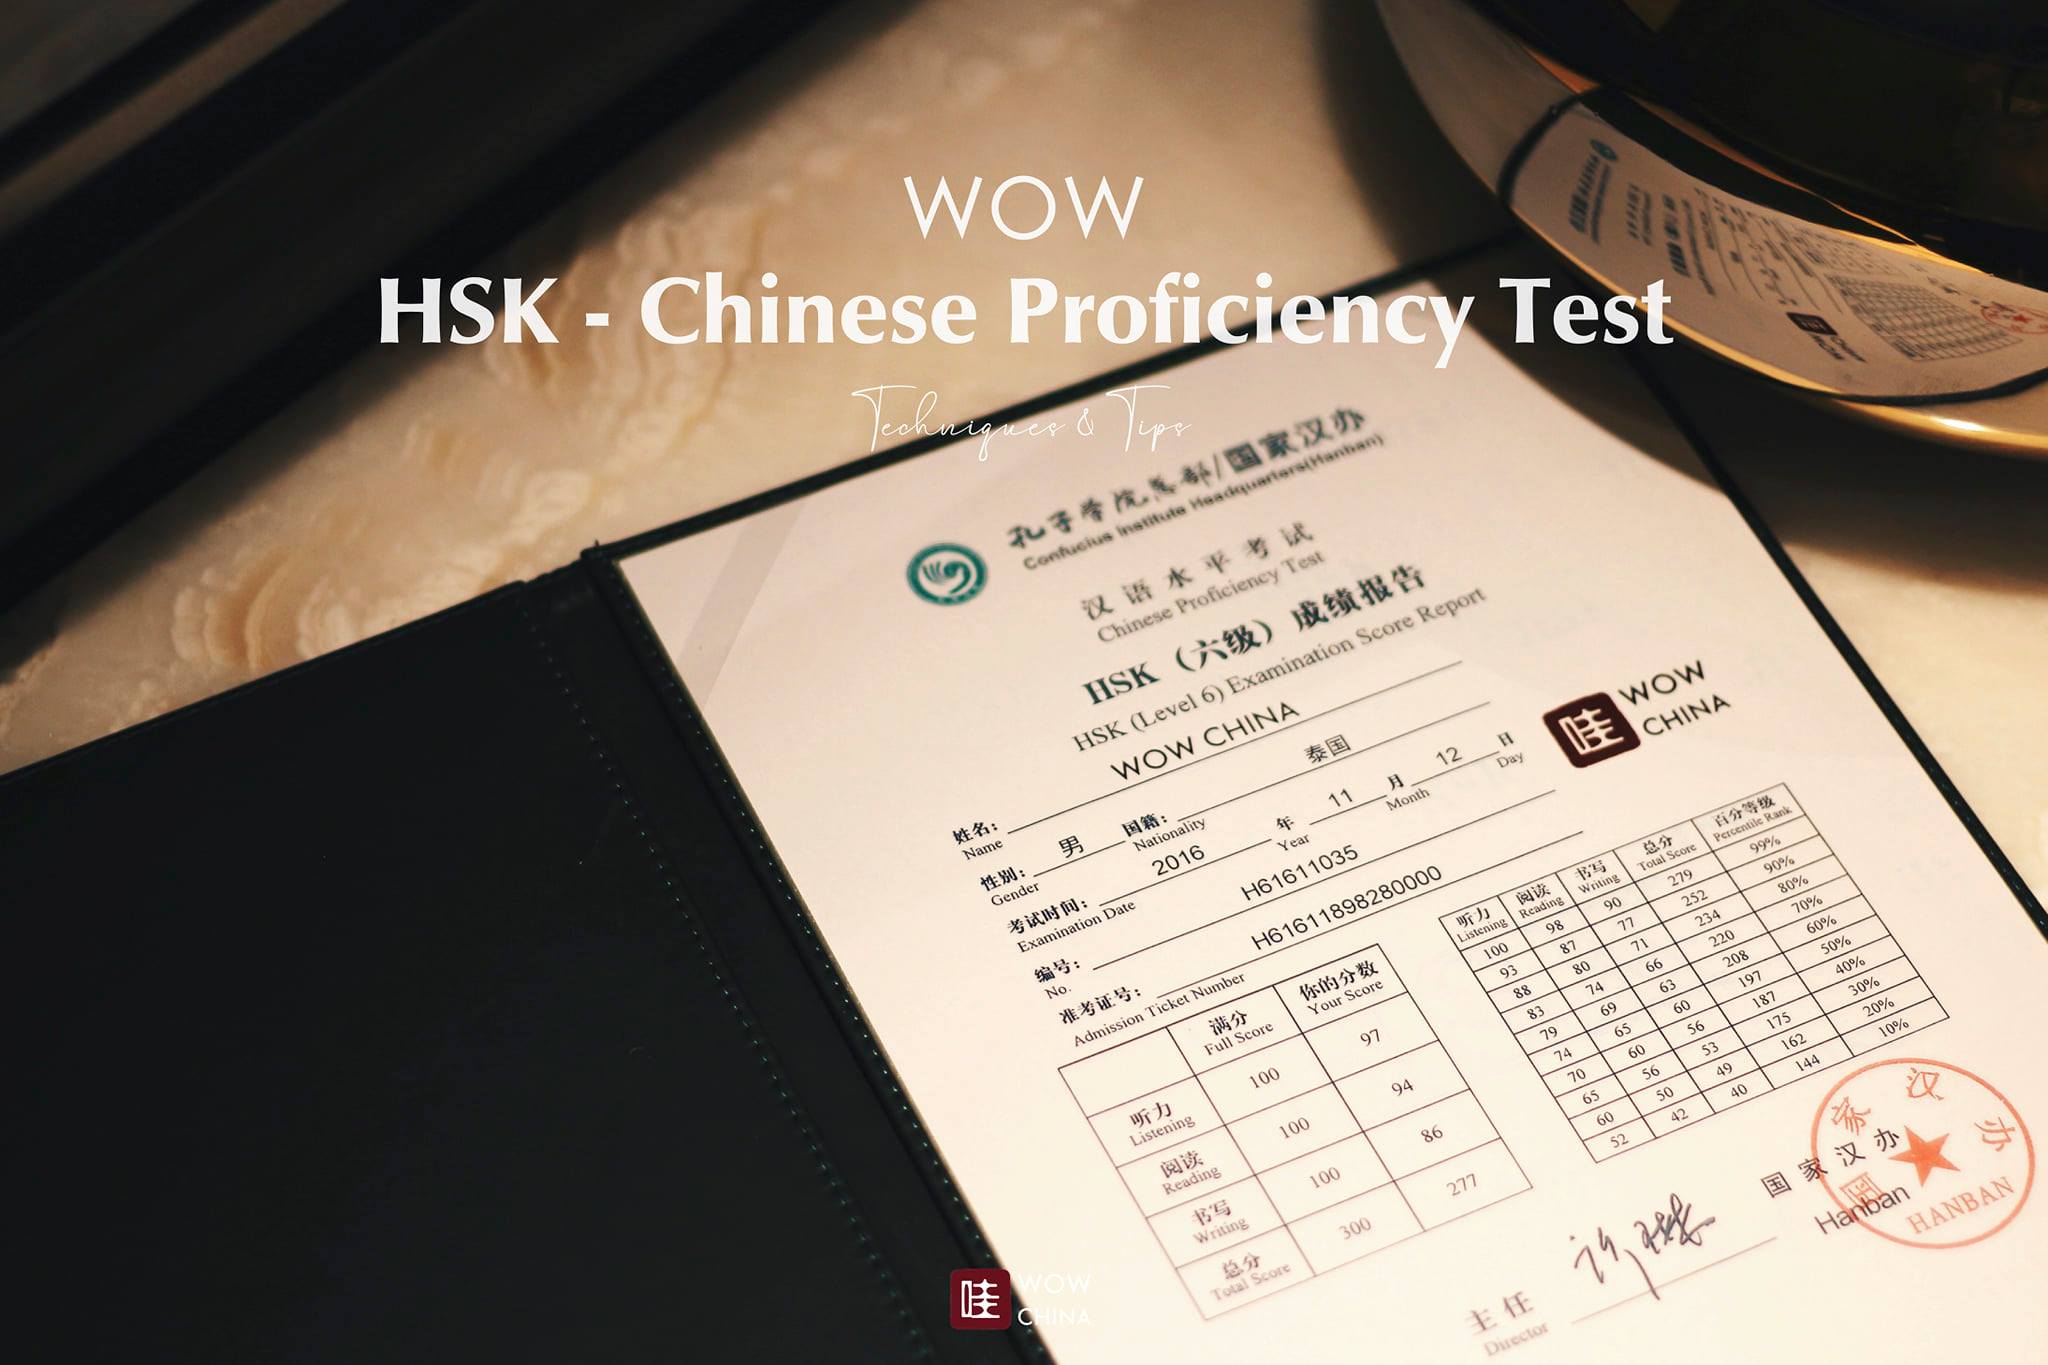 เผย 10 เทคนิคพิชิตสอบ HSK ของแอดมิน #WOWCHINA
สอบอย่างไรให้ได้คะแนนสุด #WOW
.
HS…